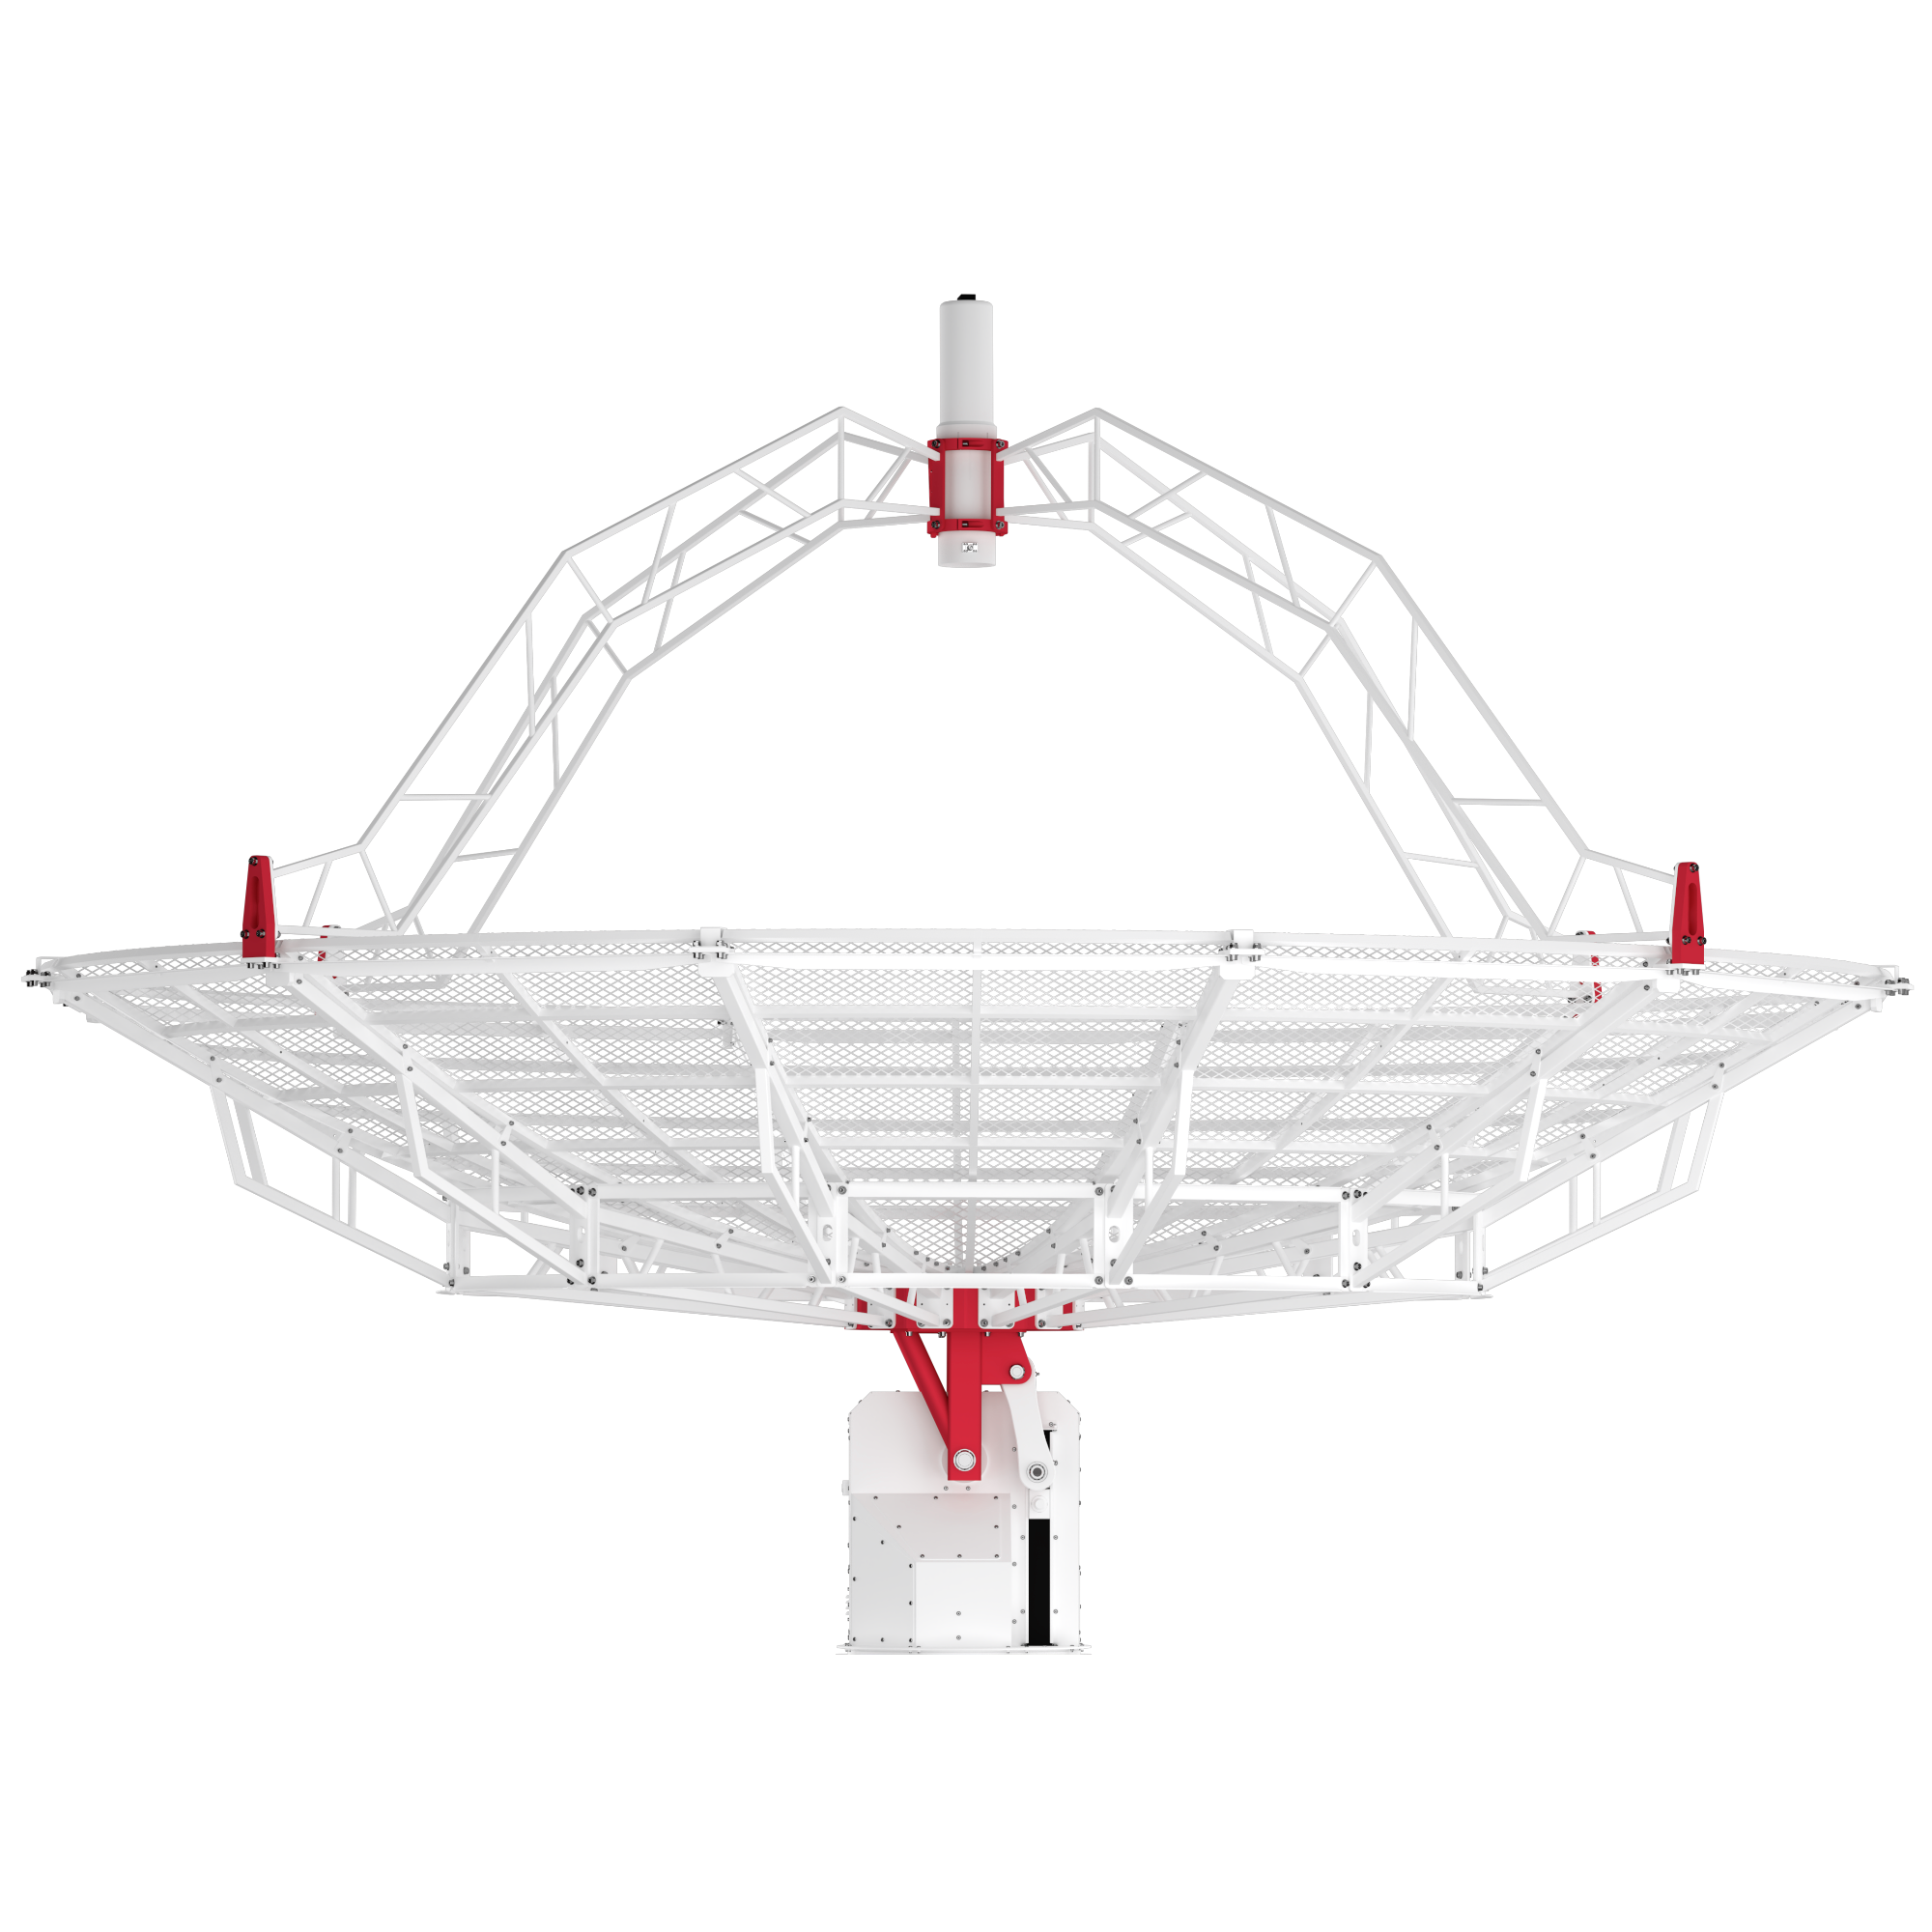 SPIDER 500A MarkII 5.0 meter diameter professional radio telescope: WEB500-5 5 meter prime focus parabolic antenna